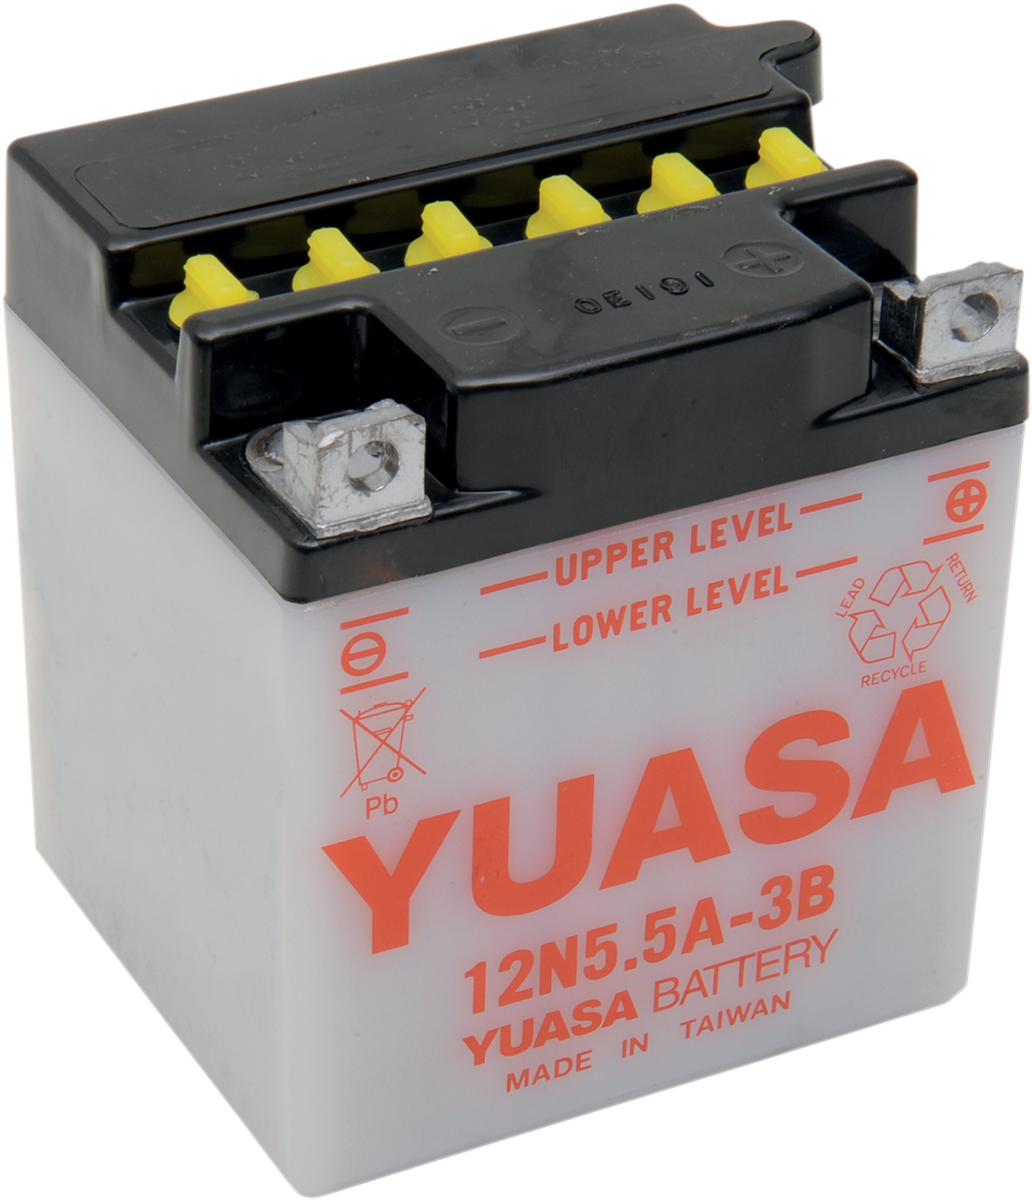 Y12N5.5A-3B - YUASA Battery - Y12N5.5A-3B YUAM22A5B